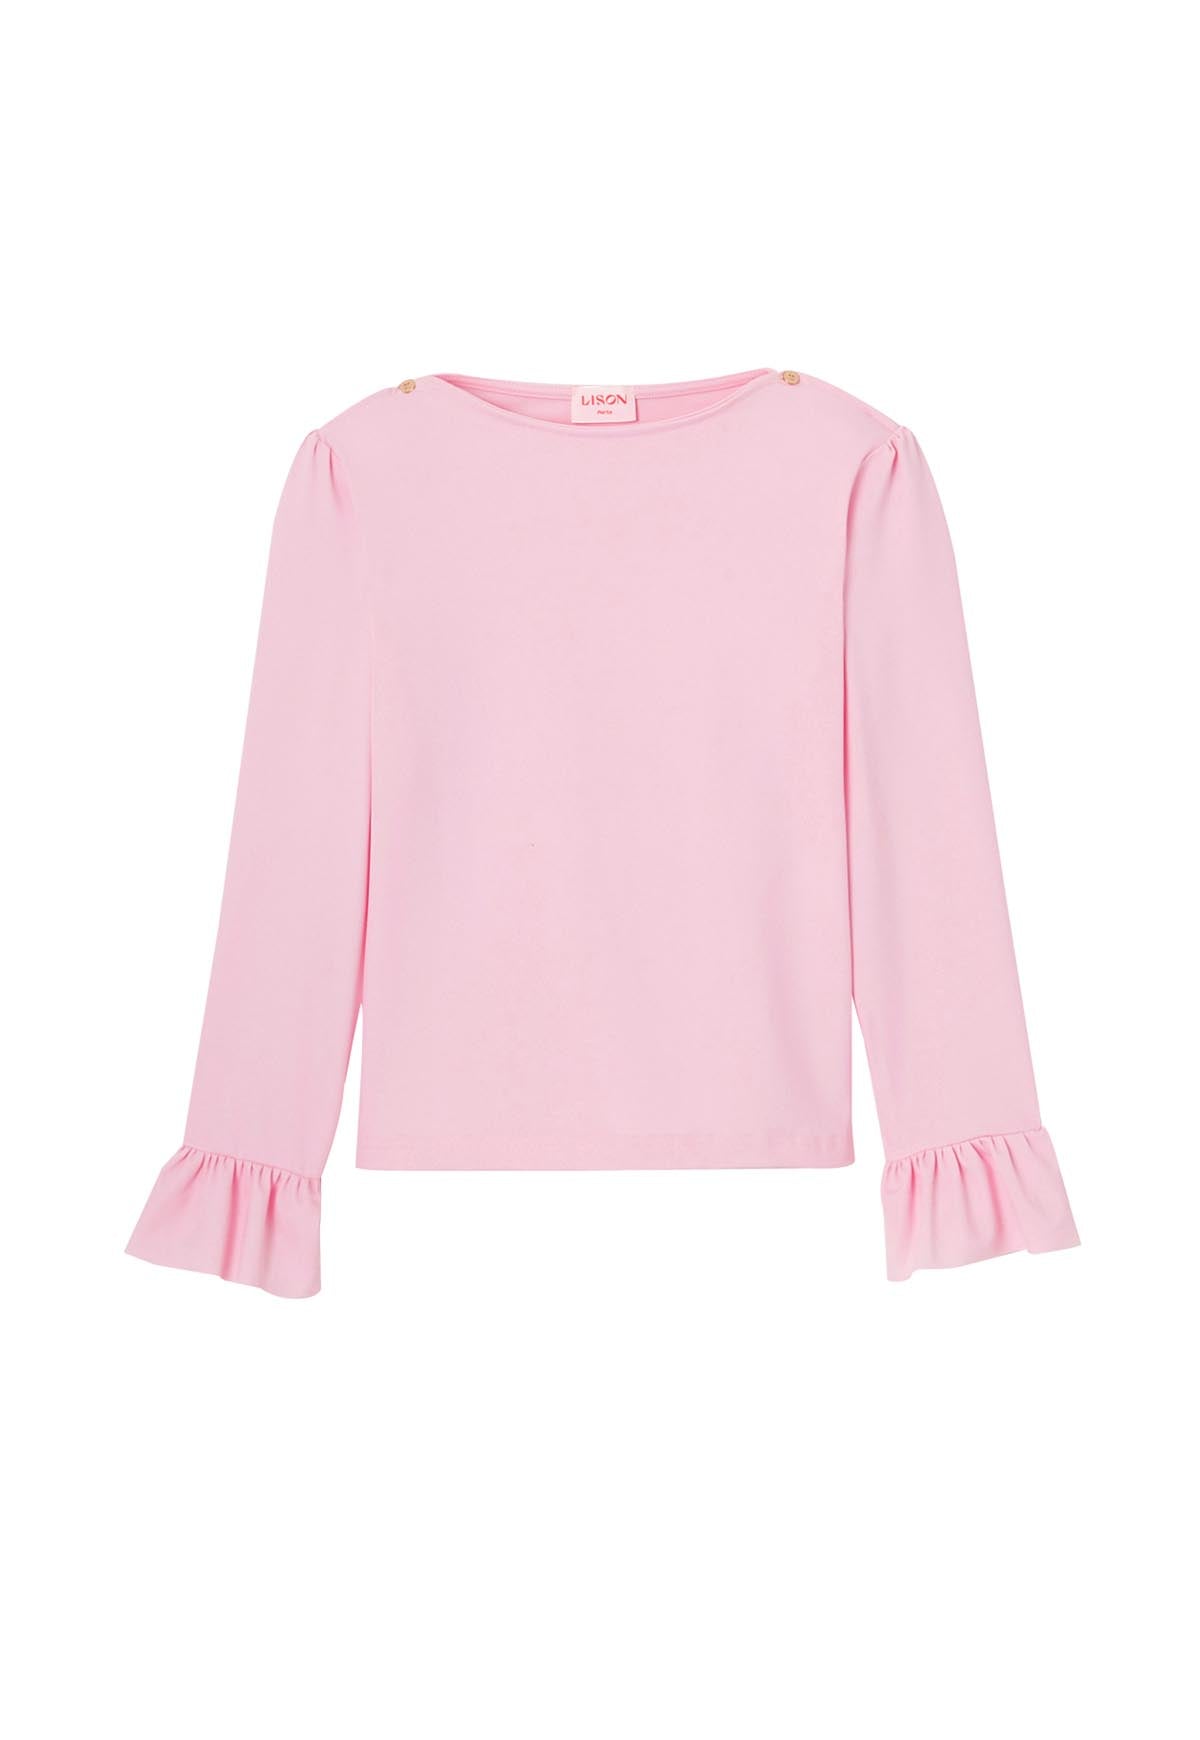 Tee-shirt anti UV fille, UPF 50+, rose pâle| BORA BORA T-SHIRT